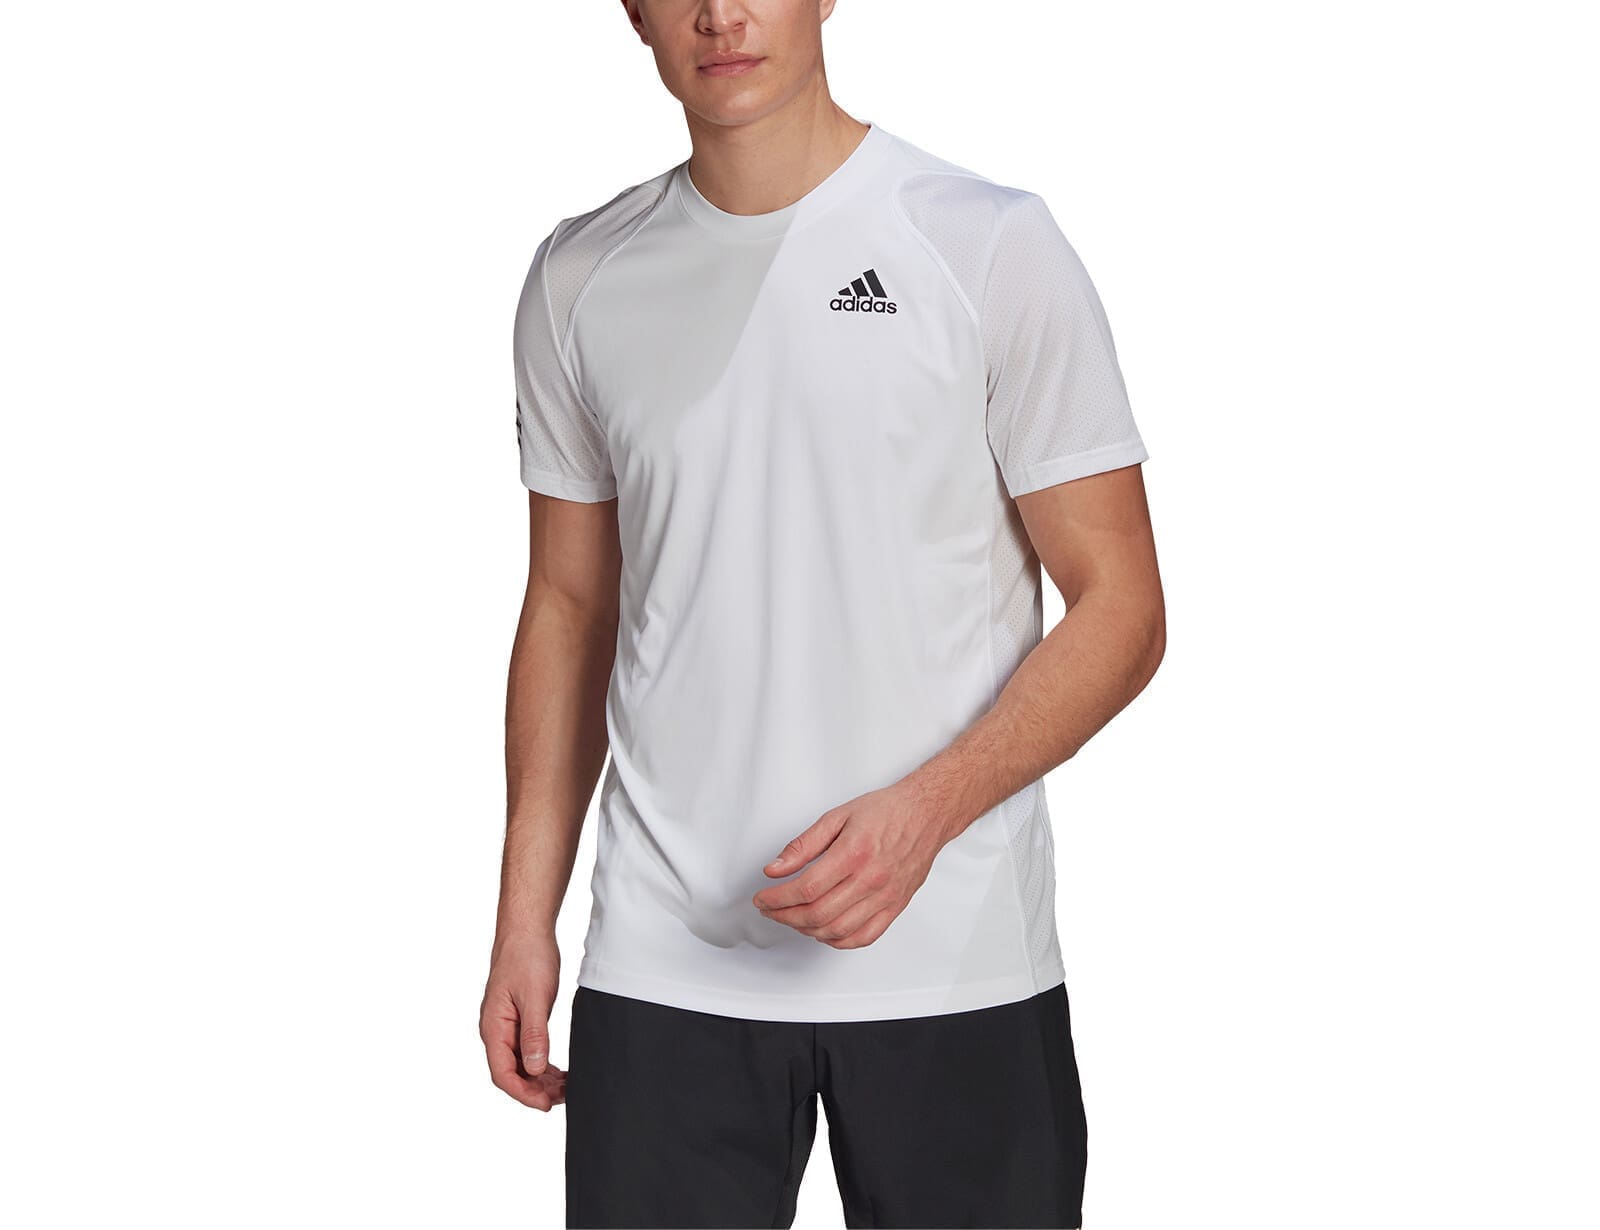 adidas - Club 3-Stripes Tee - Tennis T-shirt